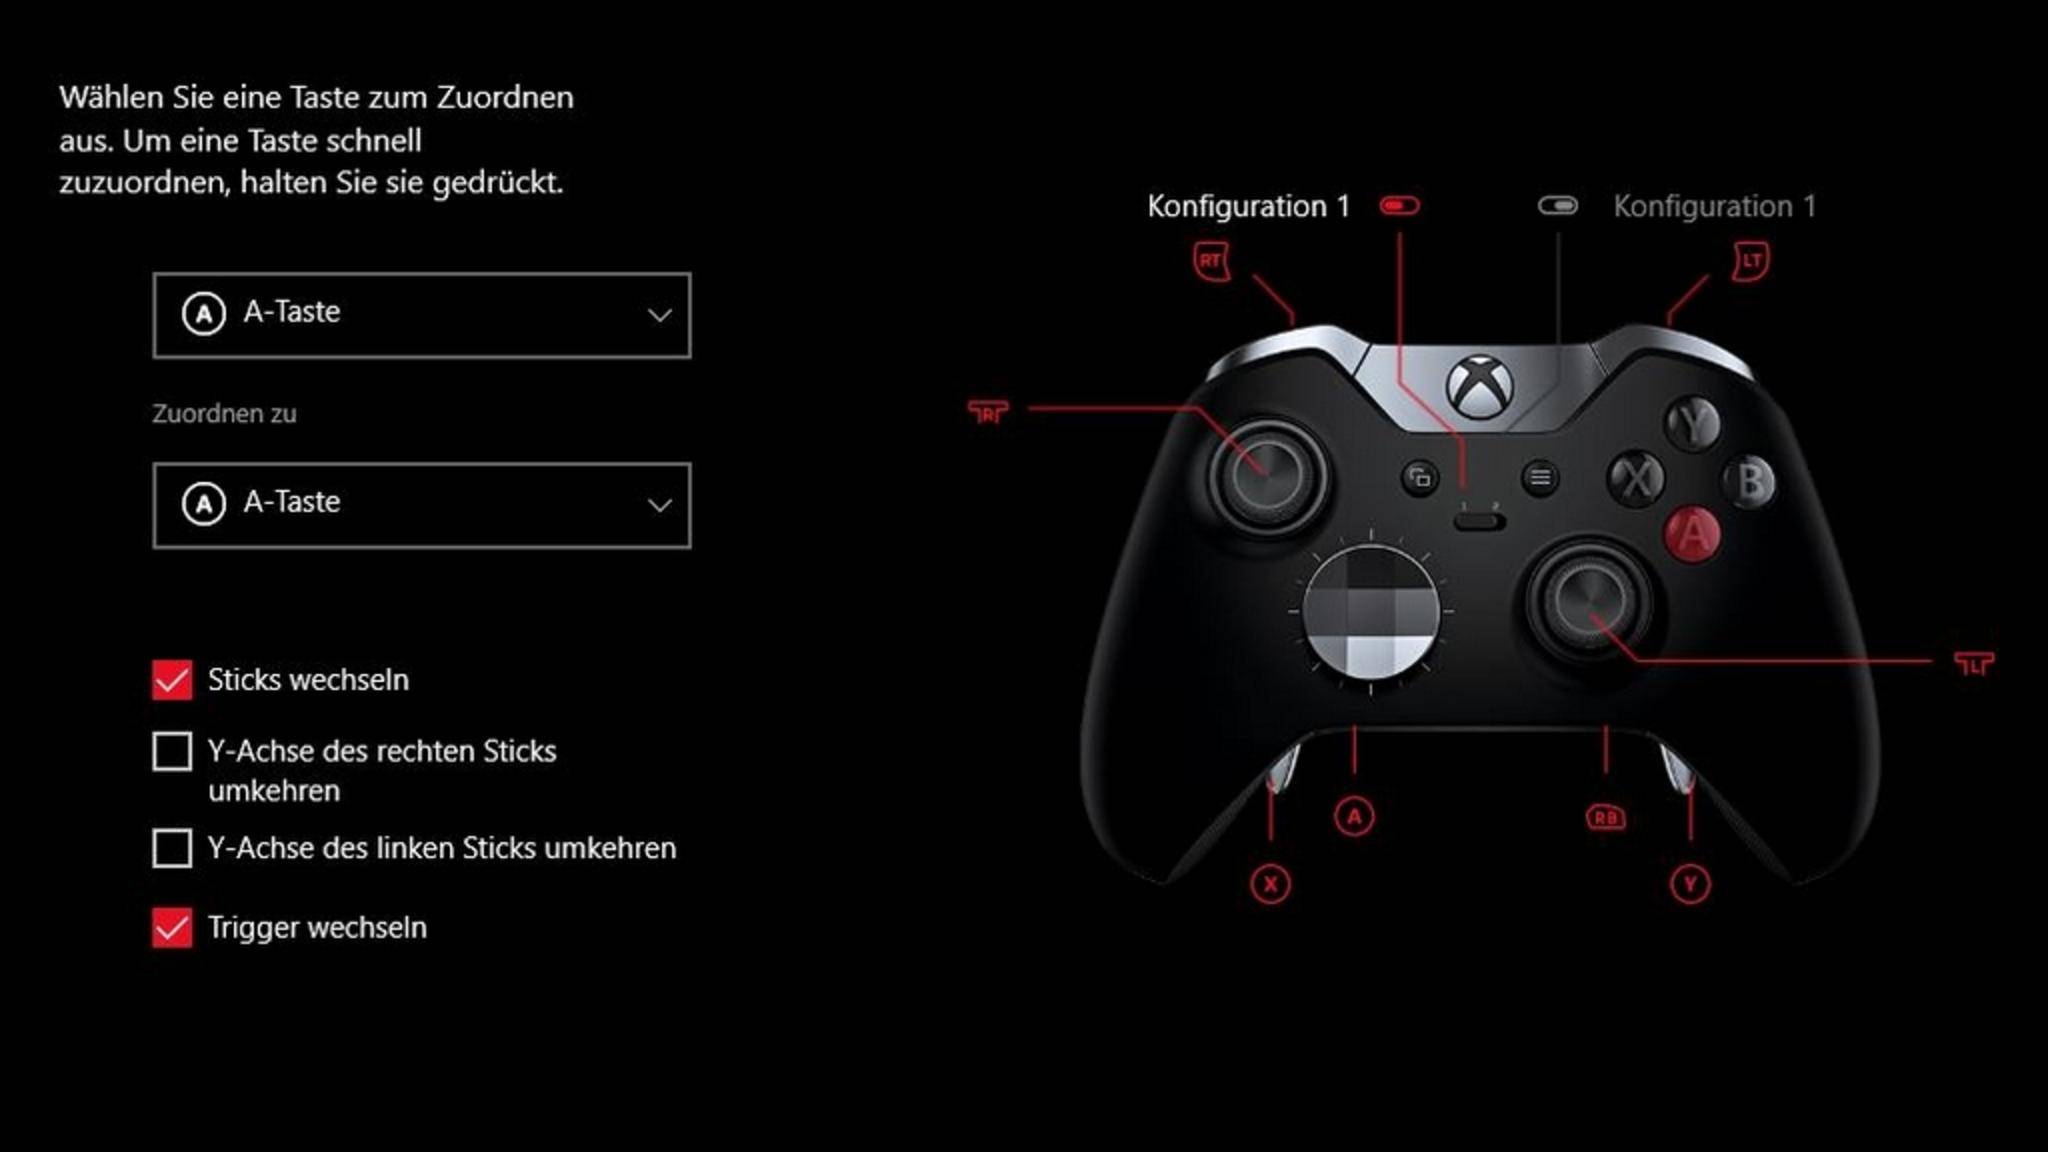 Drücken Sie die Xbox-Taste auf dem Controller, um das Guide-Menü zu öffnen.
Navigieren Sie zu Einstellungen und wählen Sie Neustart-Konsole.